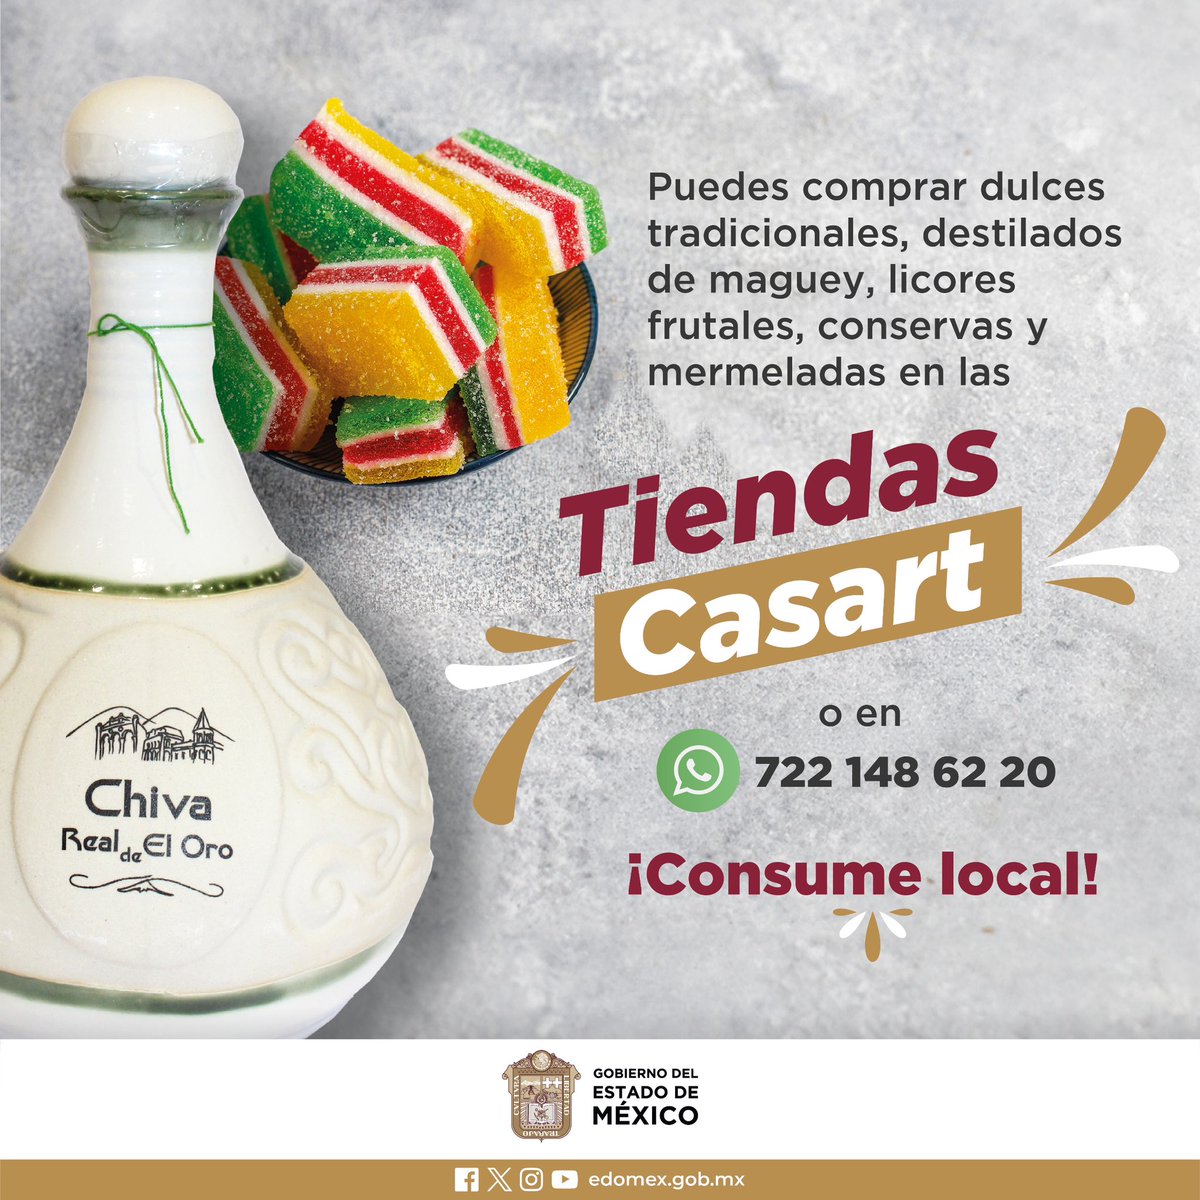 En el #EstadoDeMéxico contamos con una riqueza histórica que incluye nuestra gastronomía. Te comparto unos datos y recuerda #ConsumeLocal.